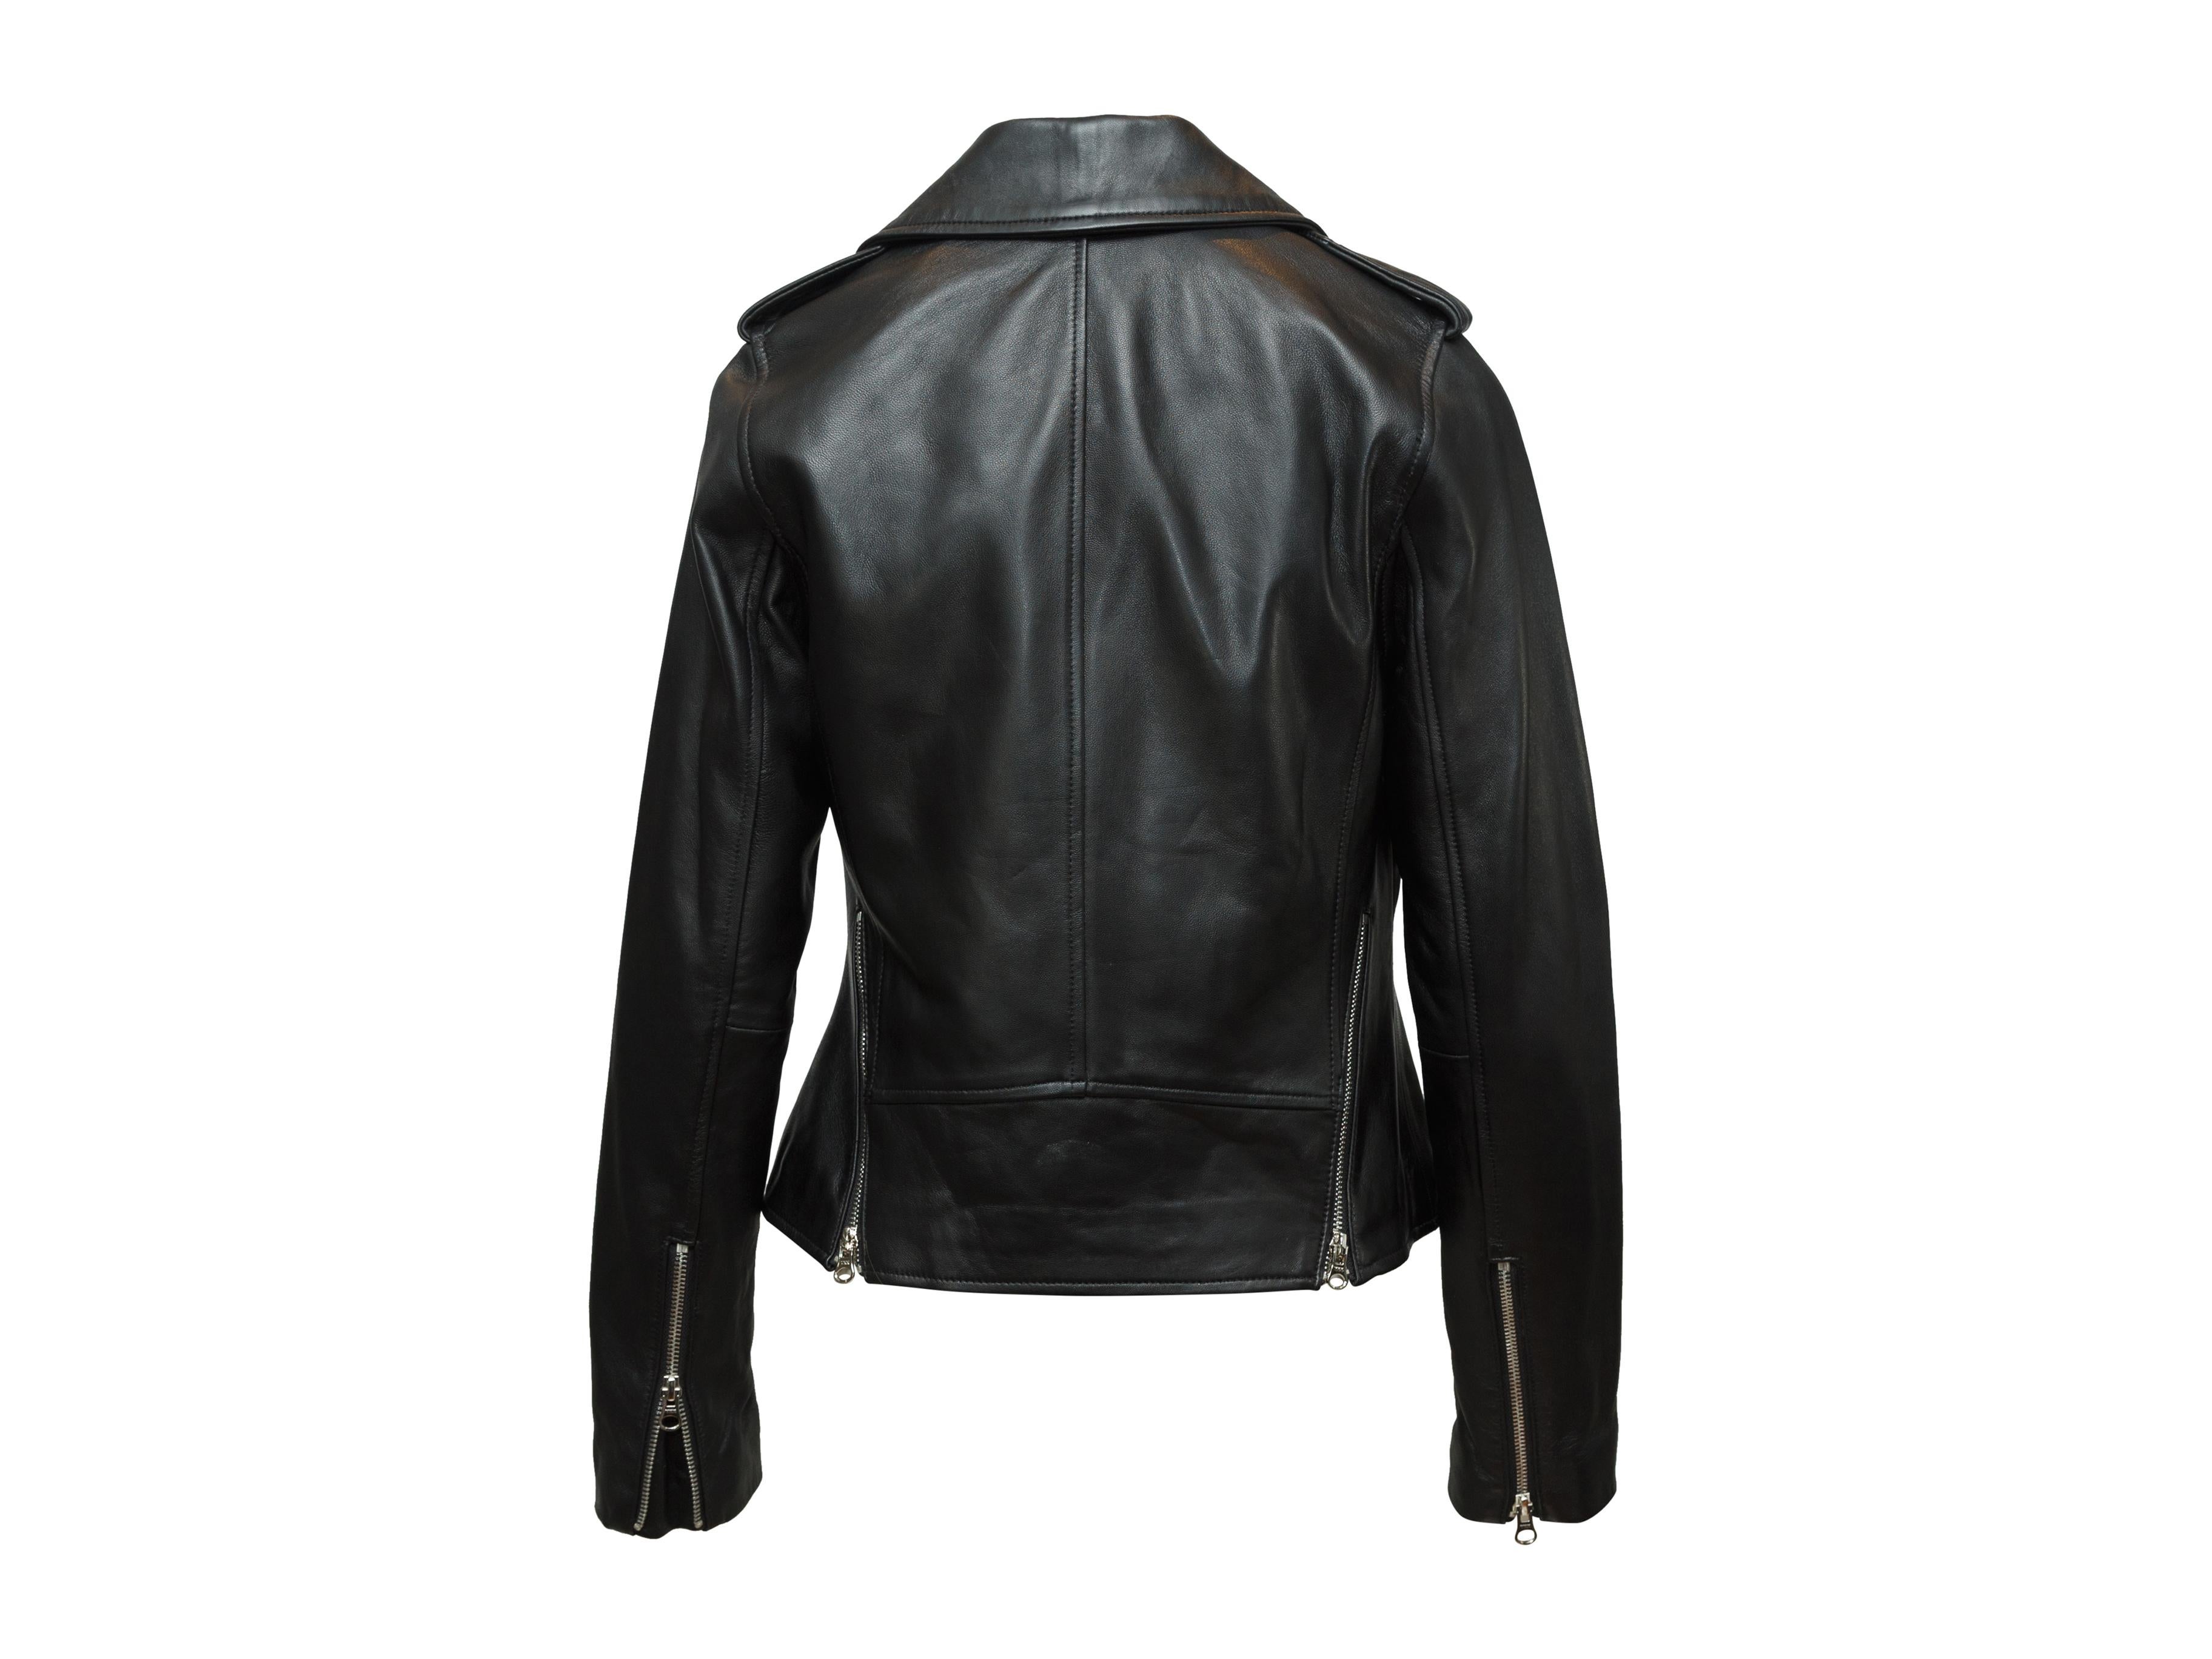 derek lam 10 crosby leather jacket